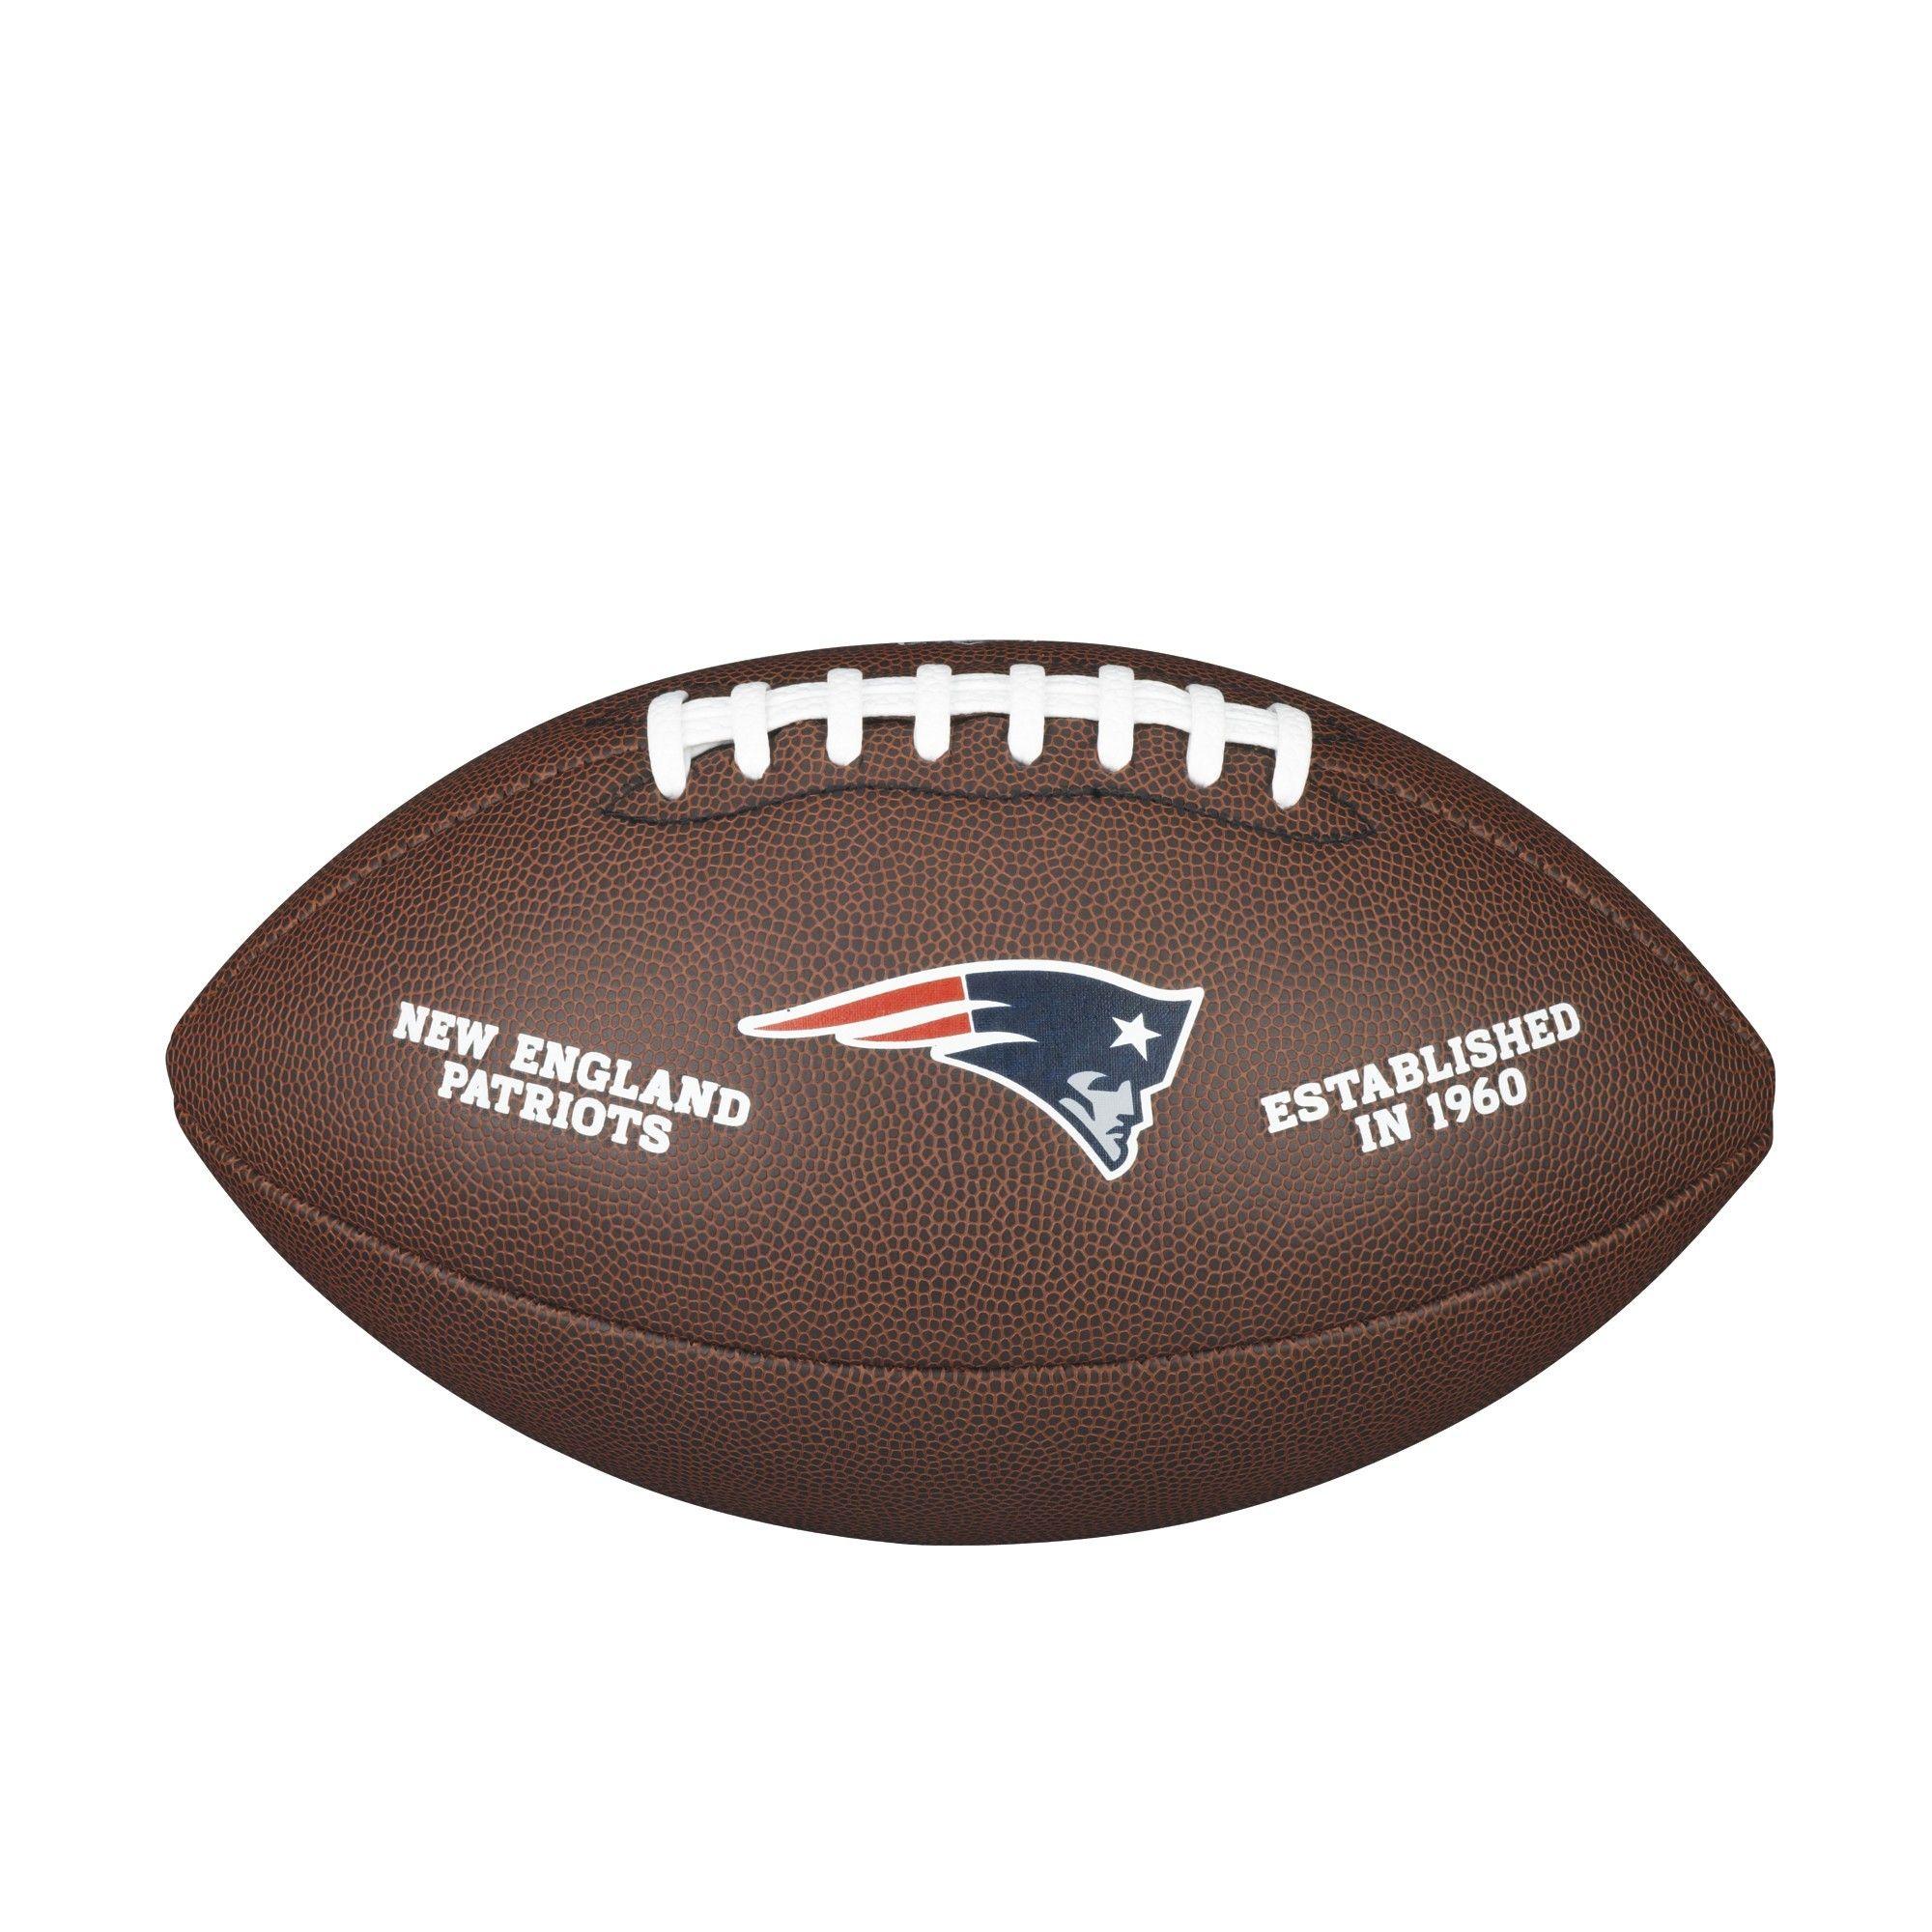 Patriots Football Logo - NFL TEAM LOGO COMPOSITE FOOTBALL - OFFICIAL, NEW ENGLAND PATRIOTS ...